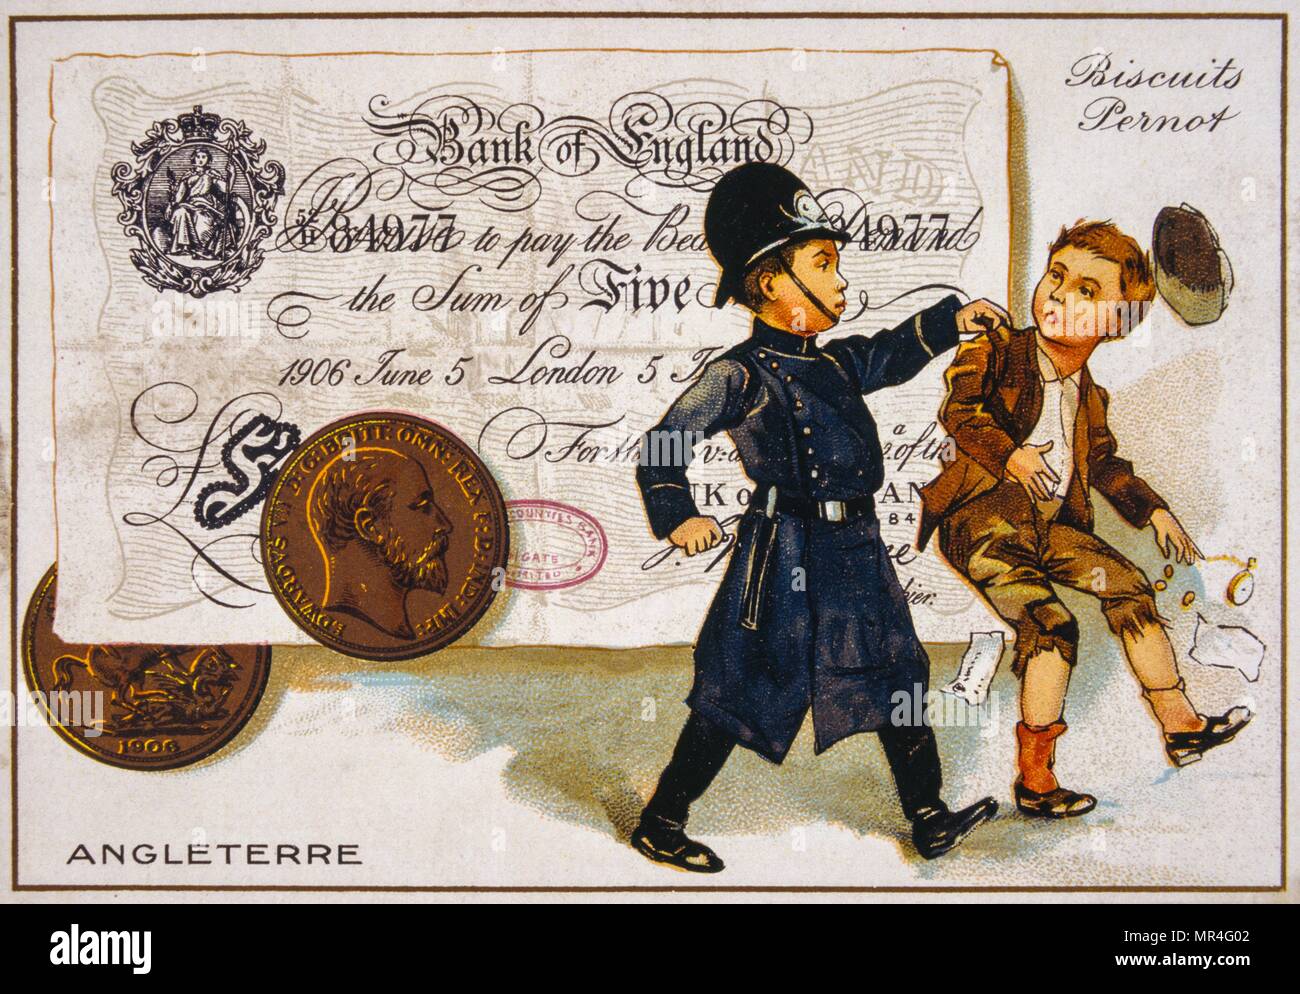 Cartolina francese del 1900 raffigurante un poliziotto britannico arresto di un ragazzo insieme contro un cinque libbra banconota Foto Stock